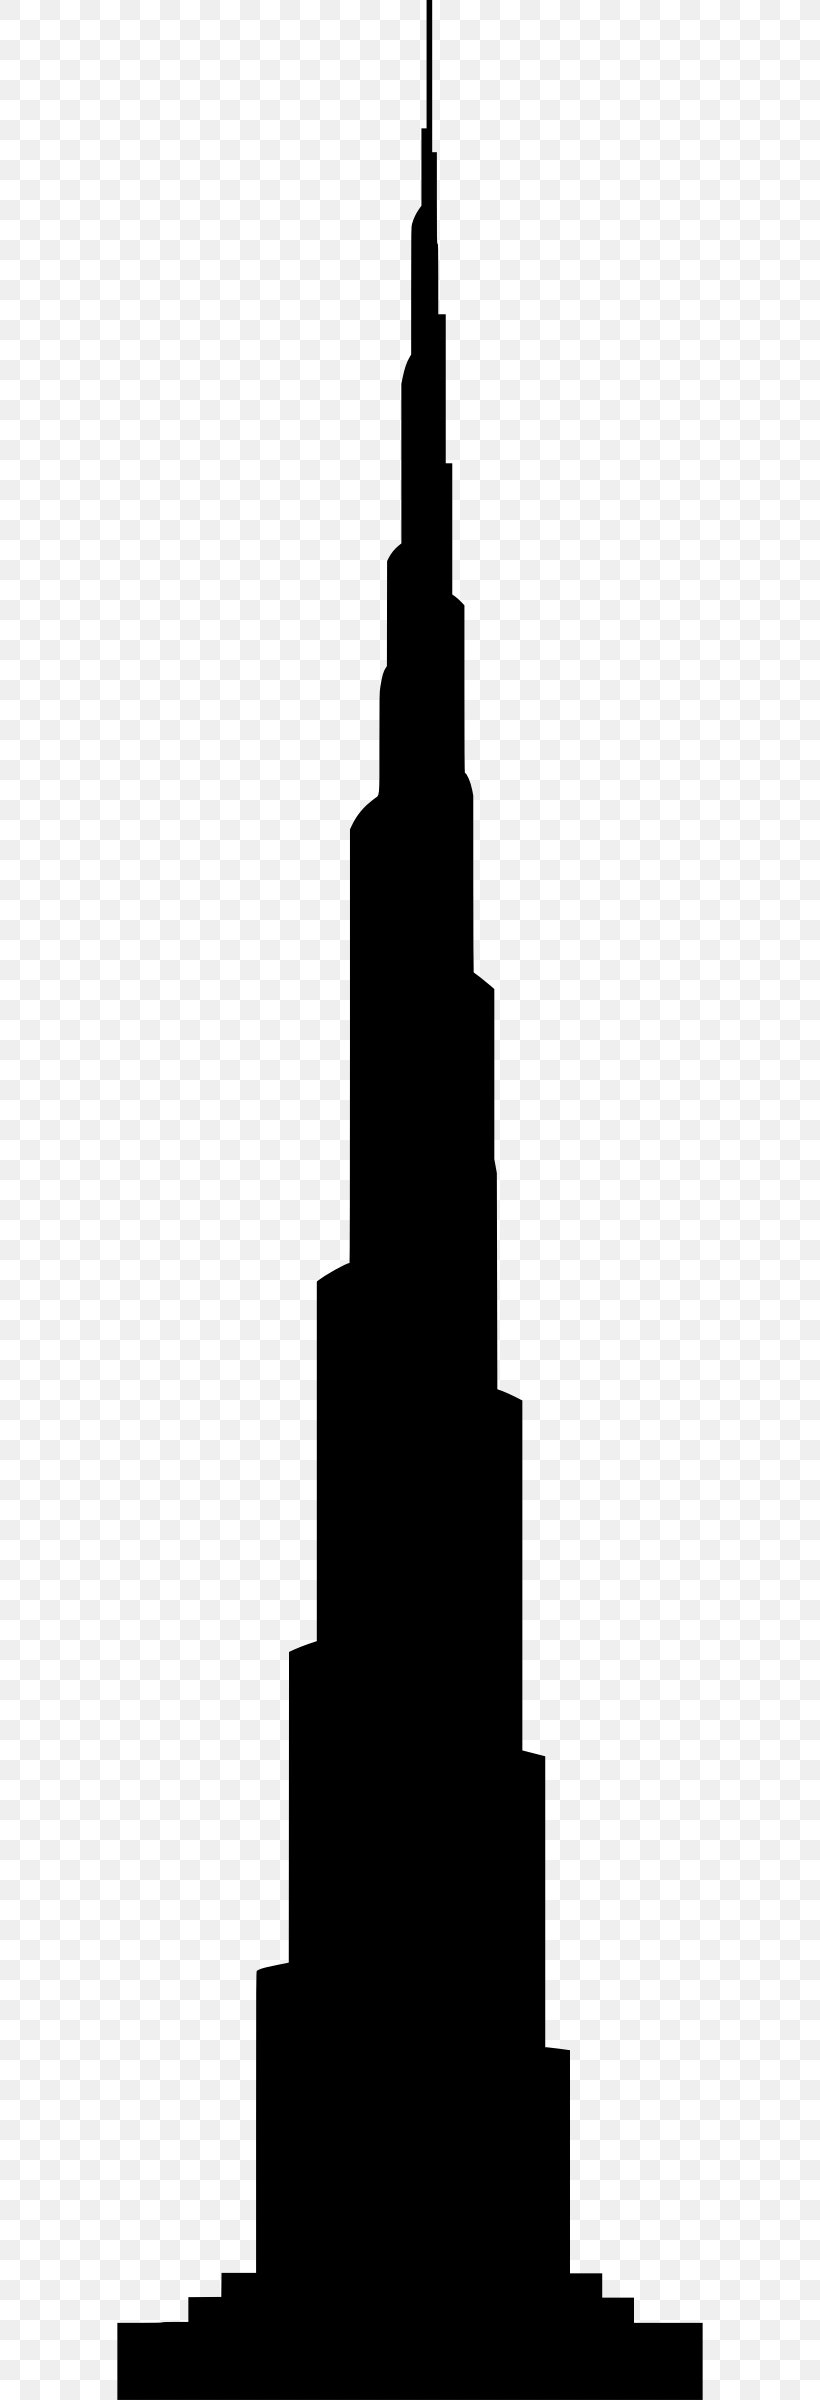 Burj Khalifa Burj Al Arab Silhouette Tower Drawing, PNG, 586x2400px, Burj Khalifa, Black And White, Building, Burj Al Arab, Drawing Download Free